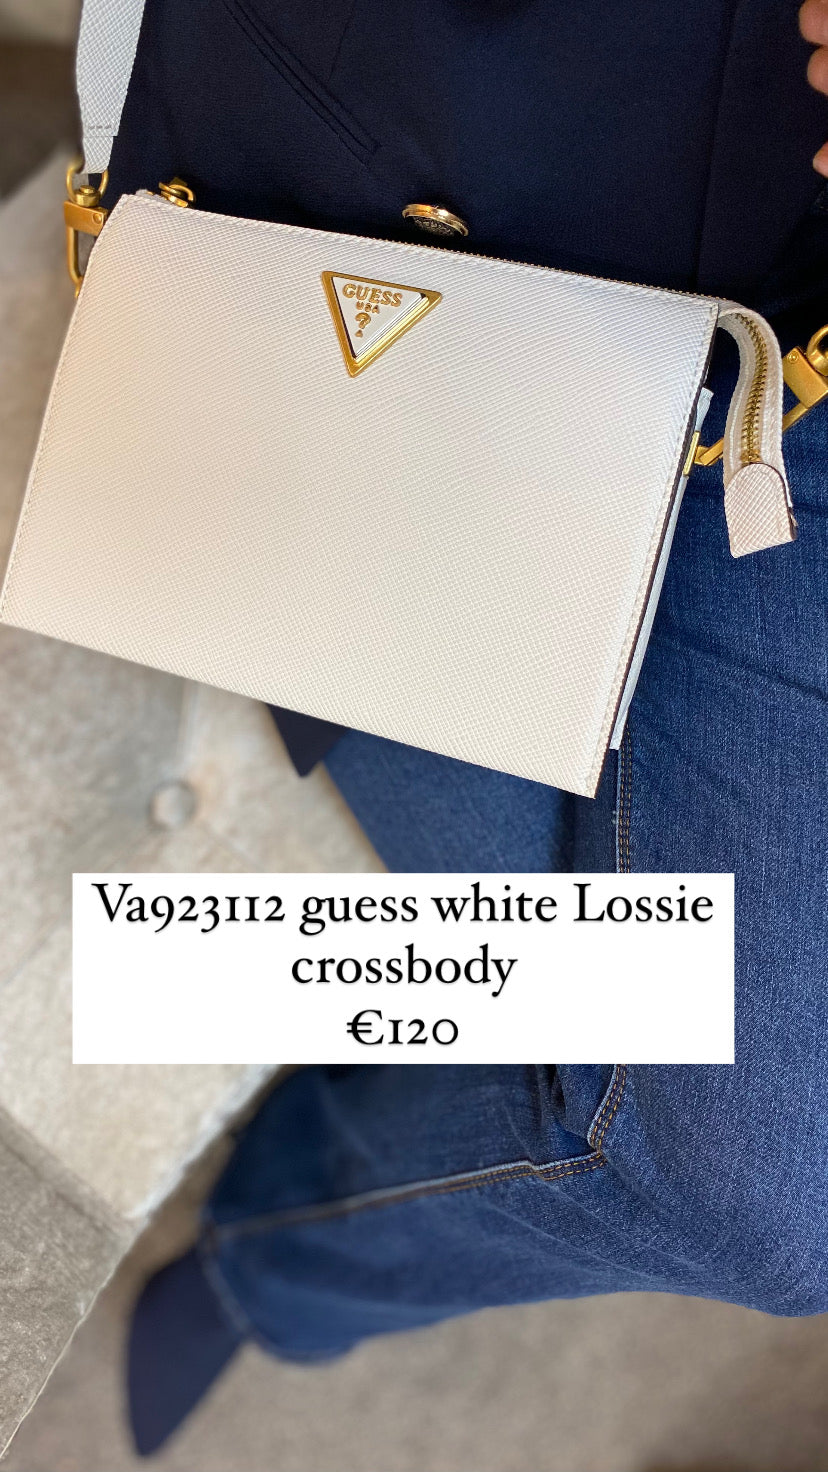 Va923112 guess white Lossie crossbody